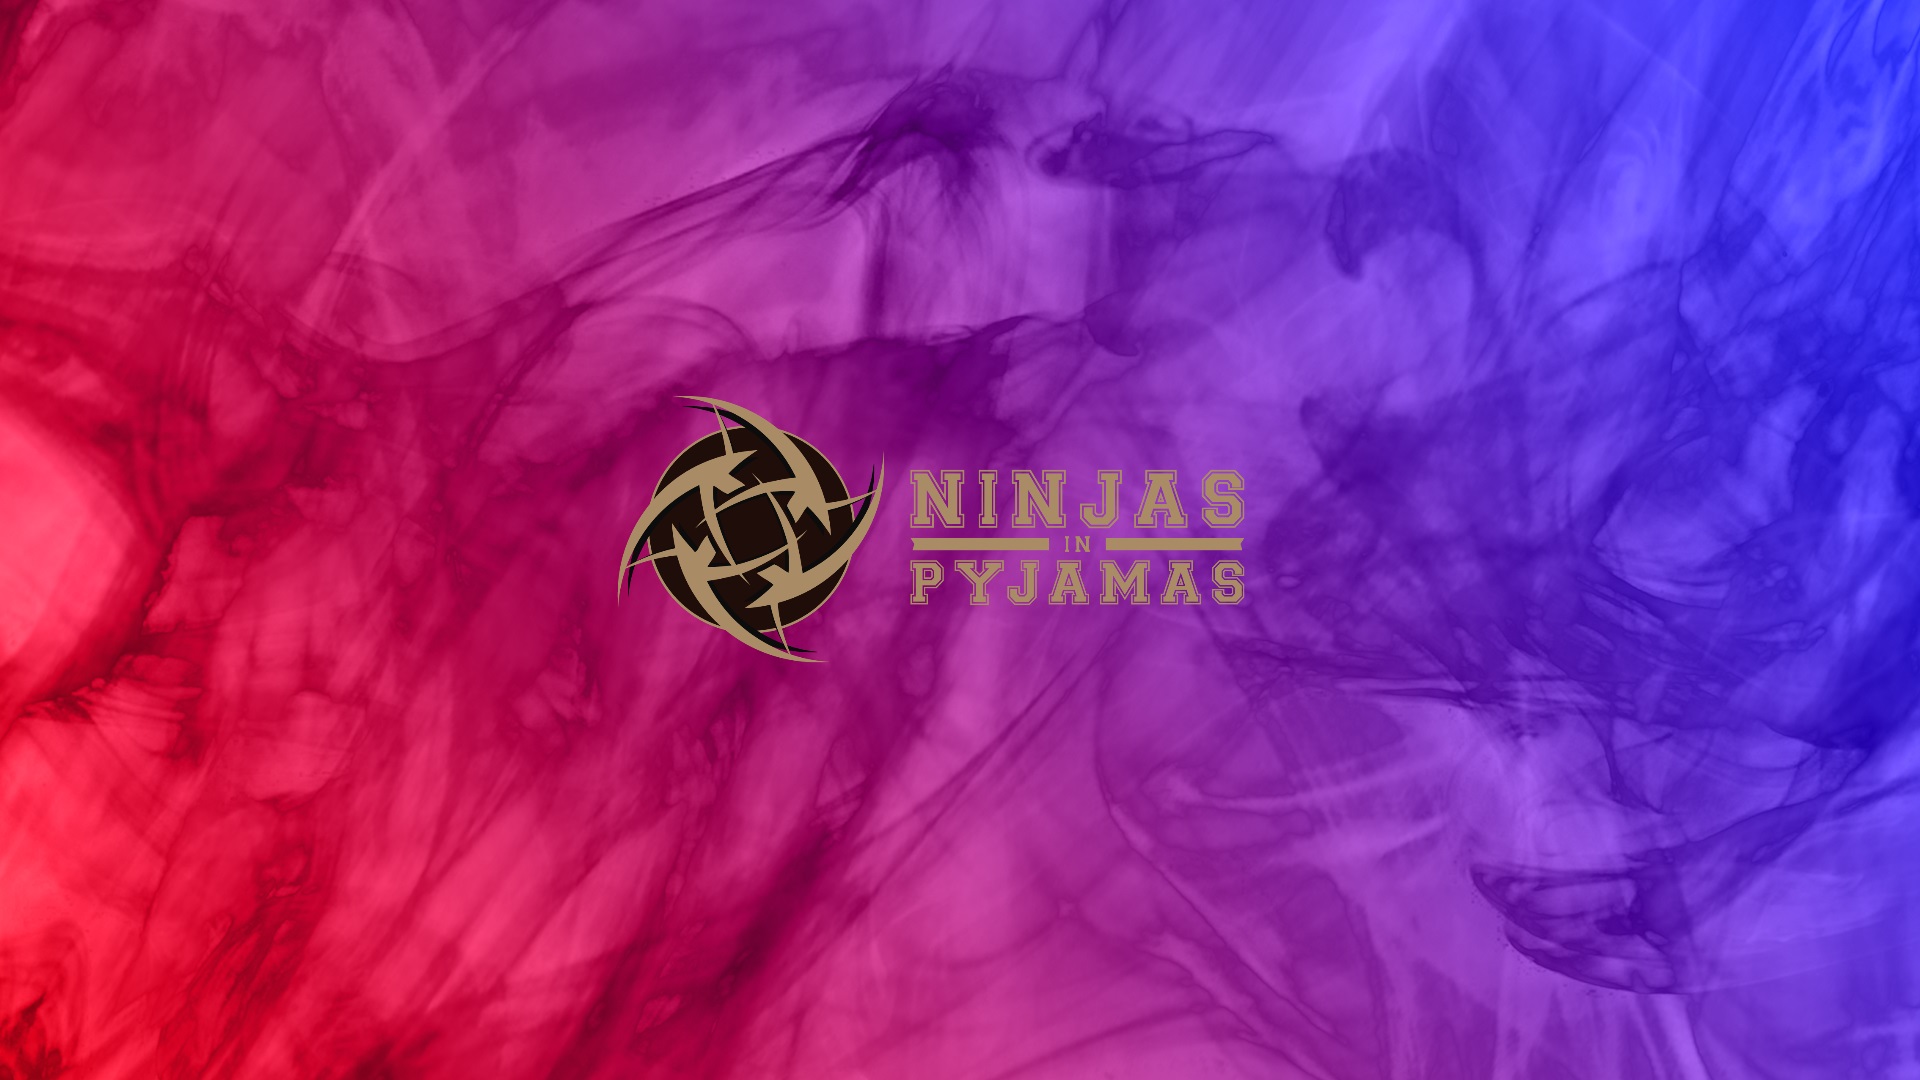 sfondo di ninja in pigiama,viola,viola,rosa,rosso,bandiera